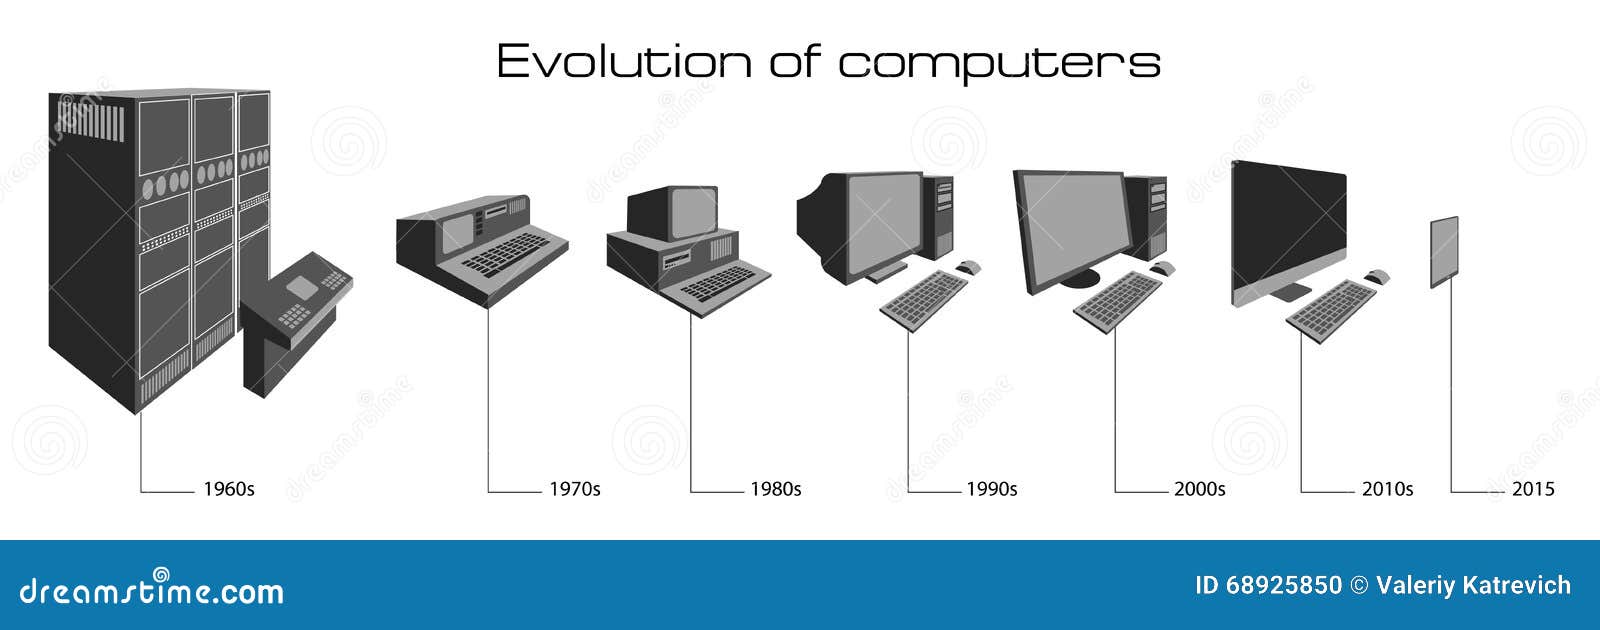 Как менялись компьютеры. Эволюция компьютеров. Эволюция компьютеров в картинках. Эволюция мониторов ПК. Компьютеры по годам.